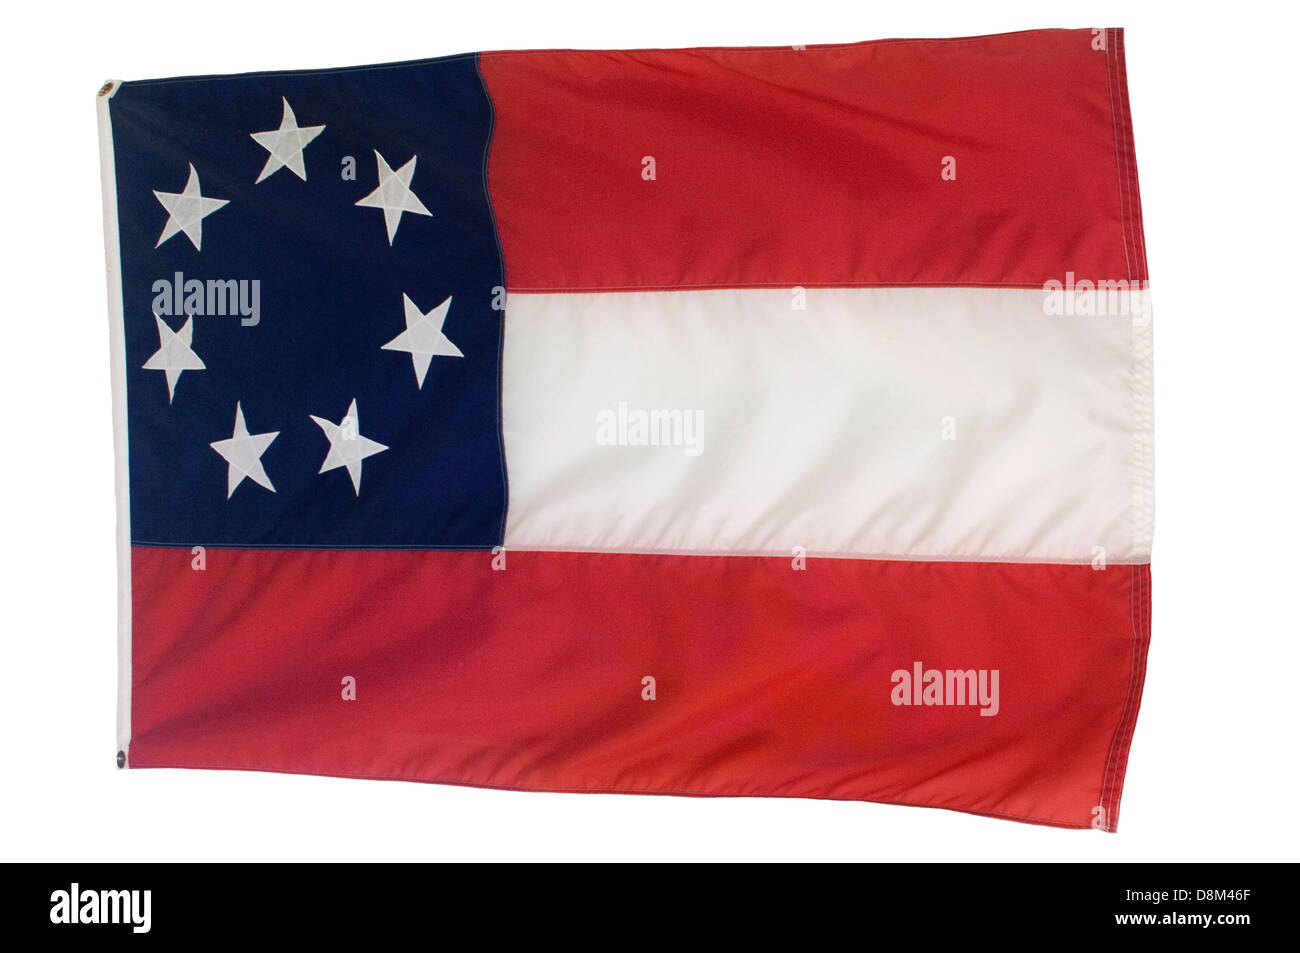 Primo stelle e bar, Confederati bandiera con 7 stelle, Fort Pillow parco statale, Tennessee. Fotografia digitale Foto Stock